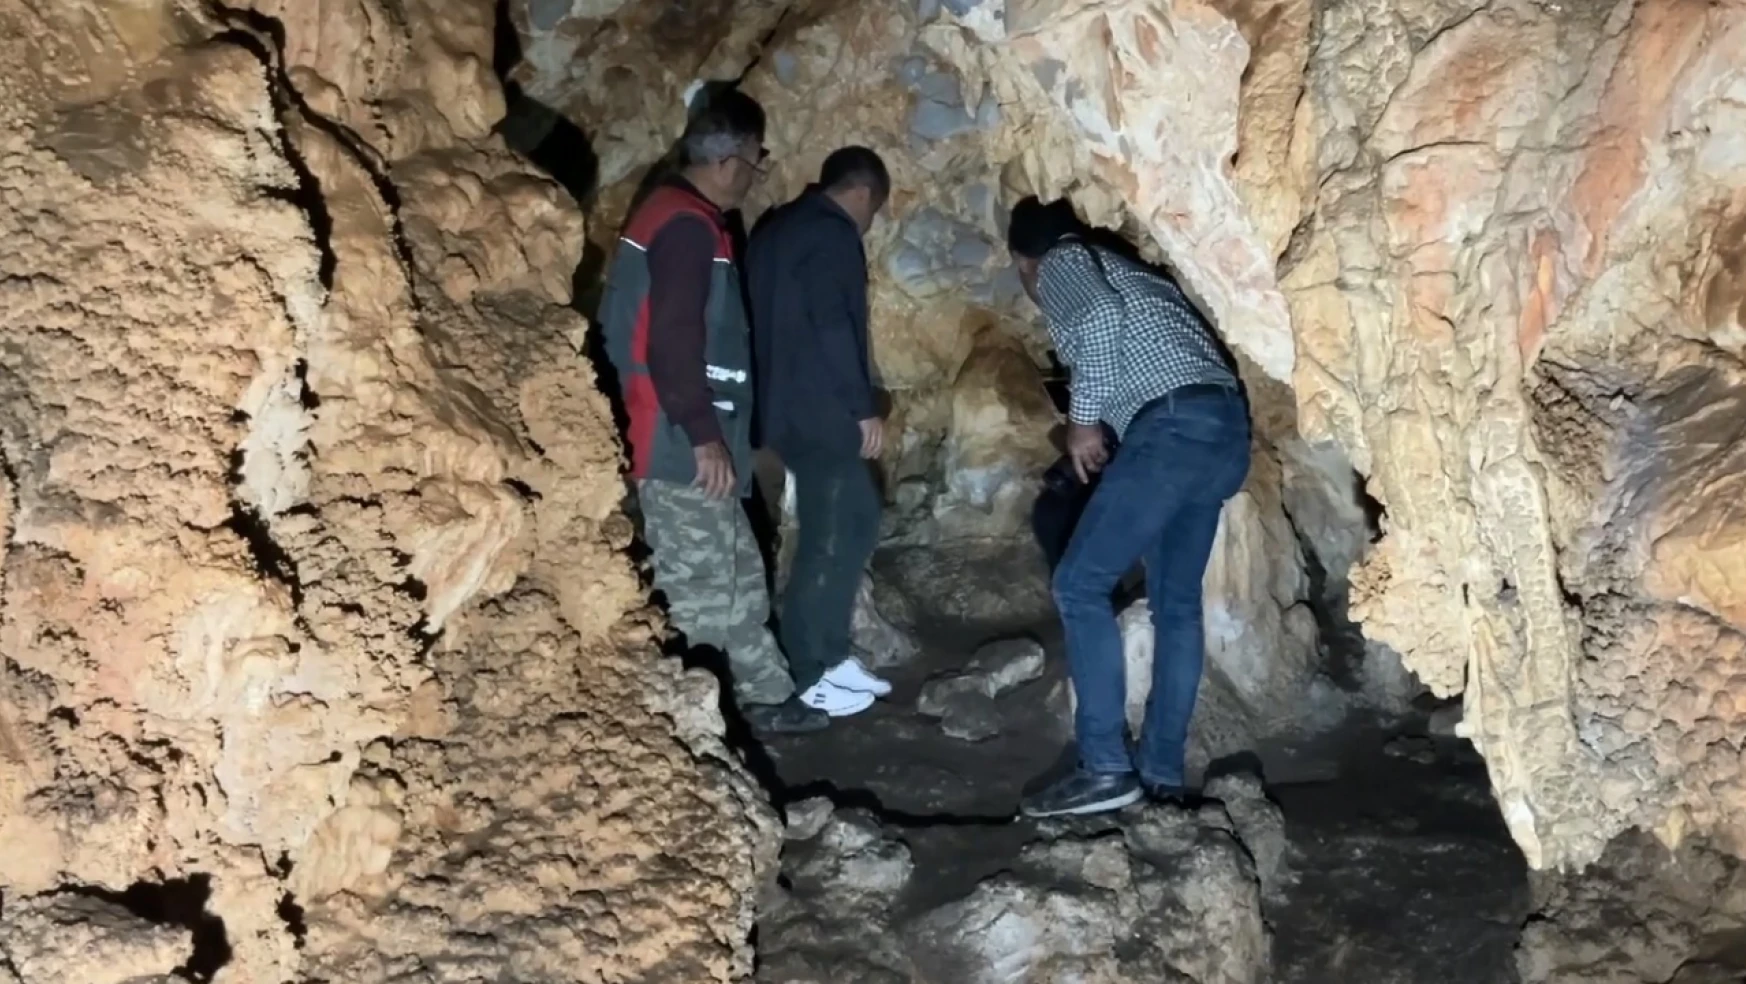 Akçatepe mağarası jeomorfolojik yapısıyla dikkat çekiyor